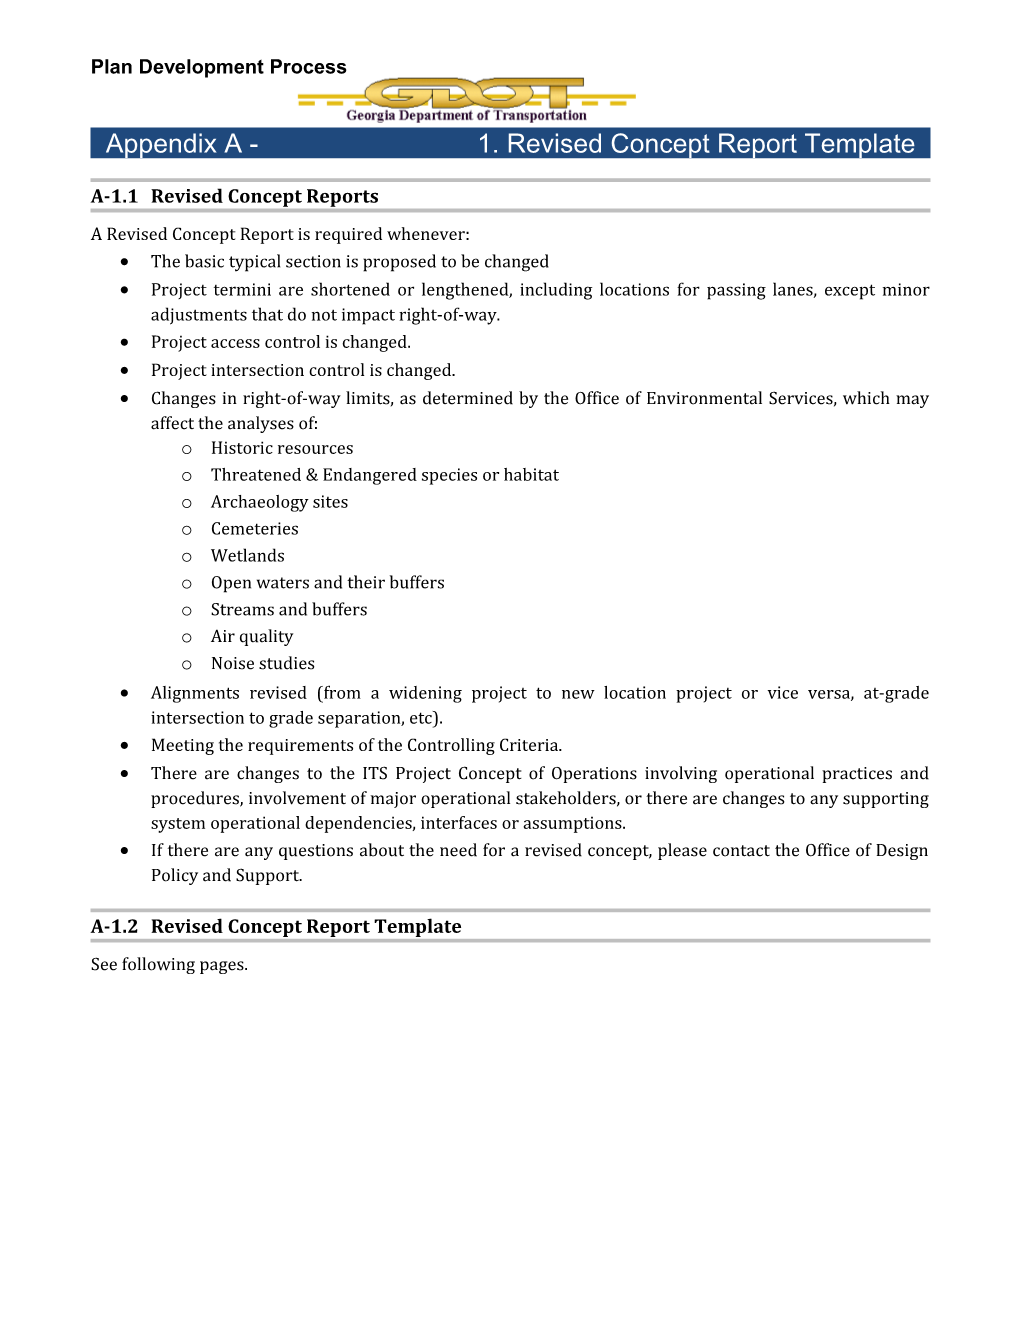 Rev Concept Report Template Appendix A-1